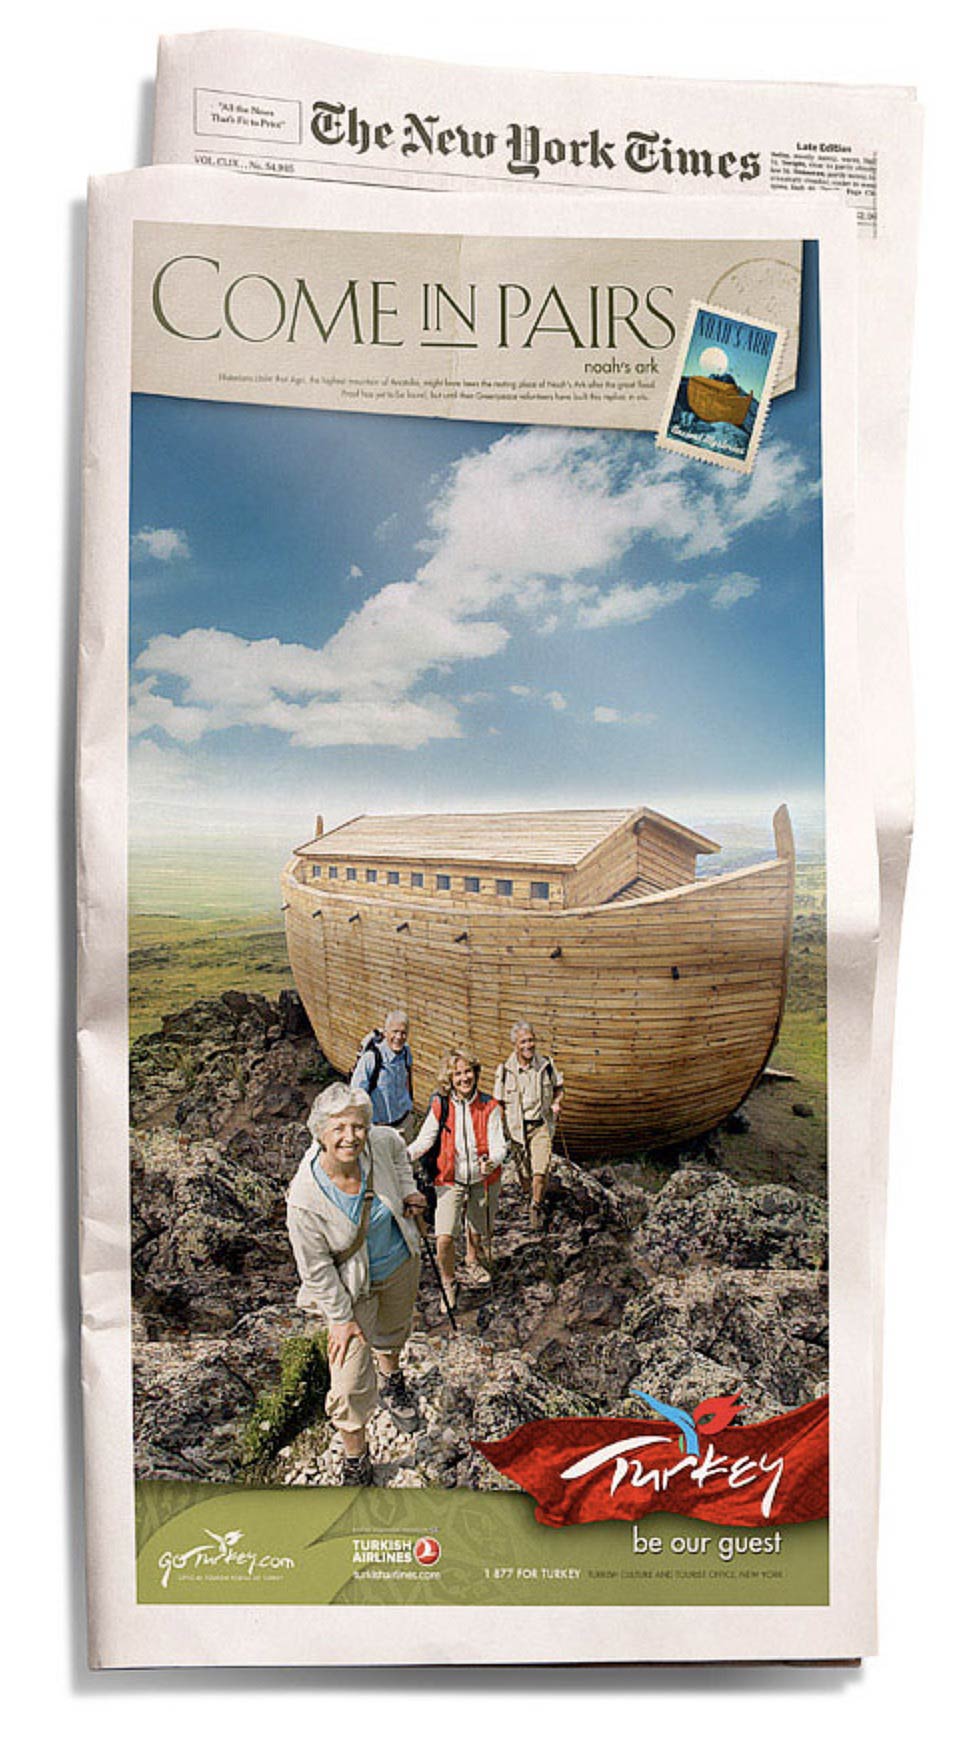 Türkiye turizm tanıtım kampanyası, Nuh'un Gemisi